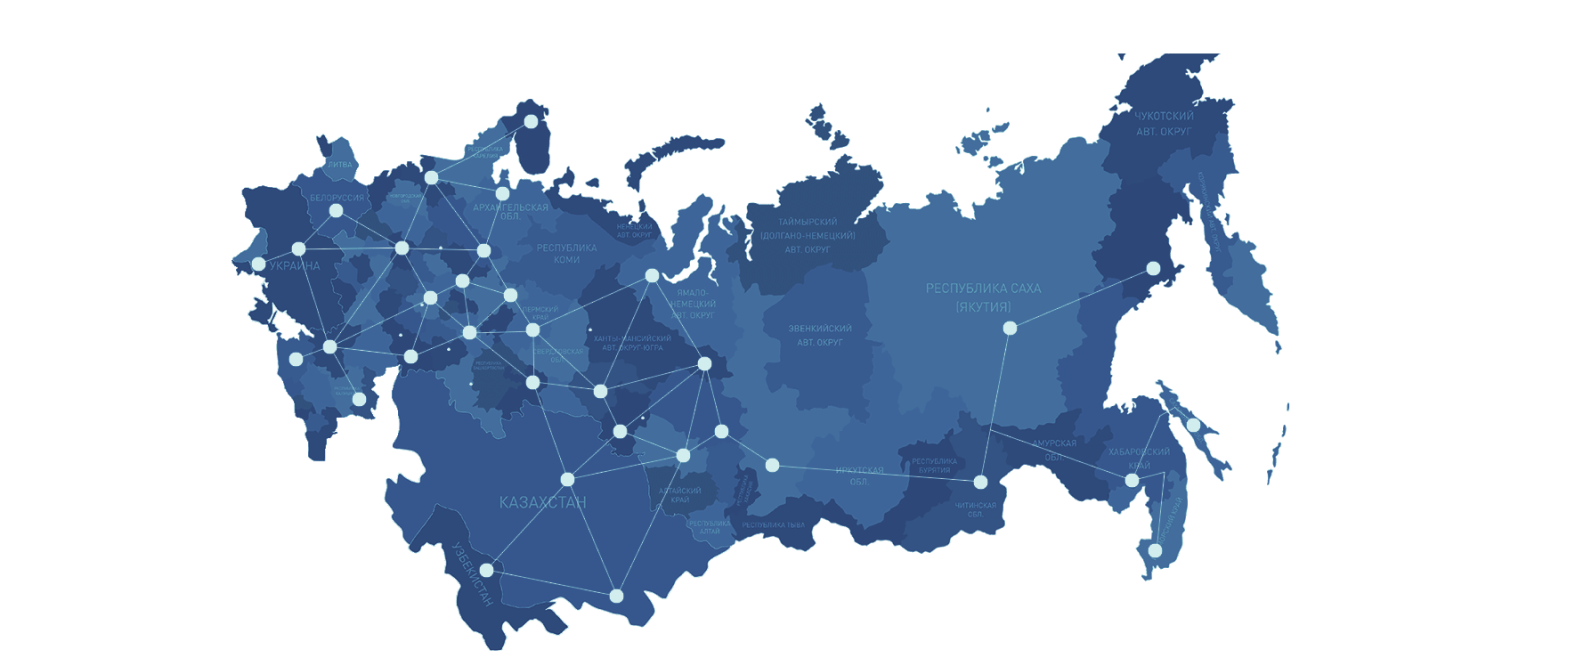 Товара по всей стране. Карта России. Карта поставок. Карта СНГ. География поставок продукции.